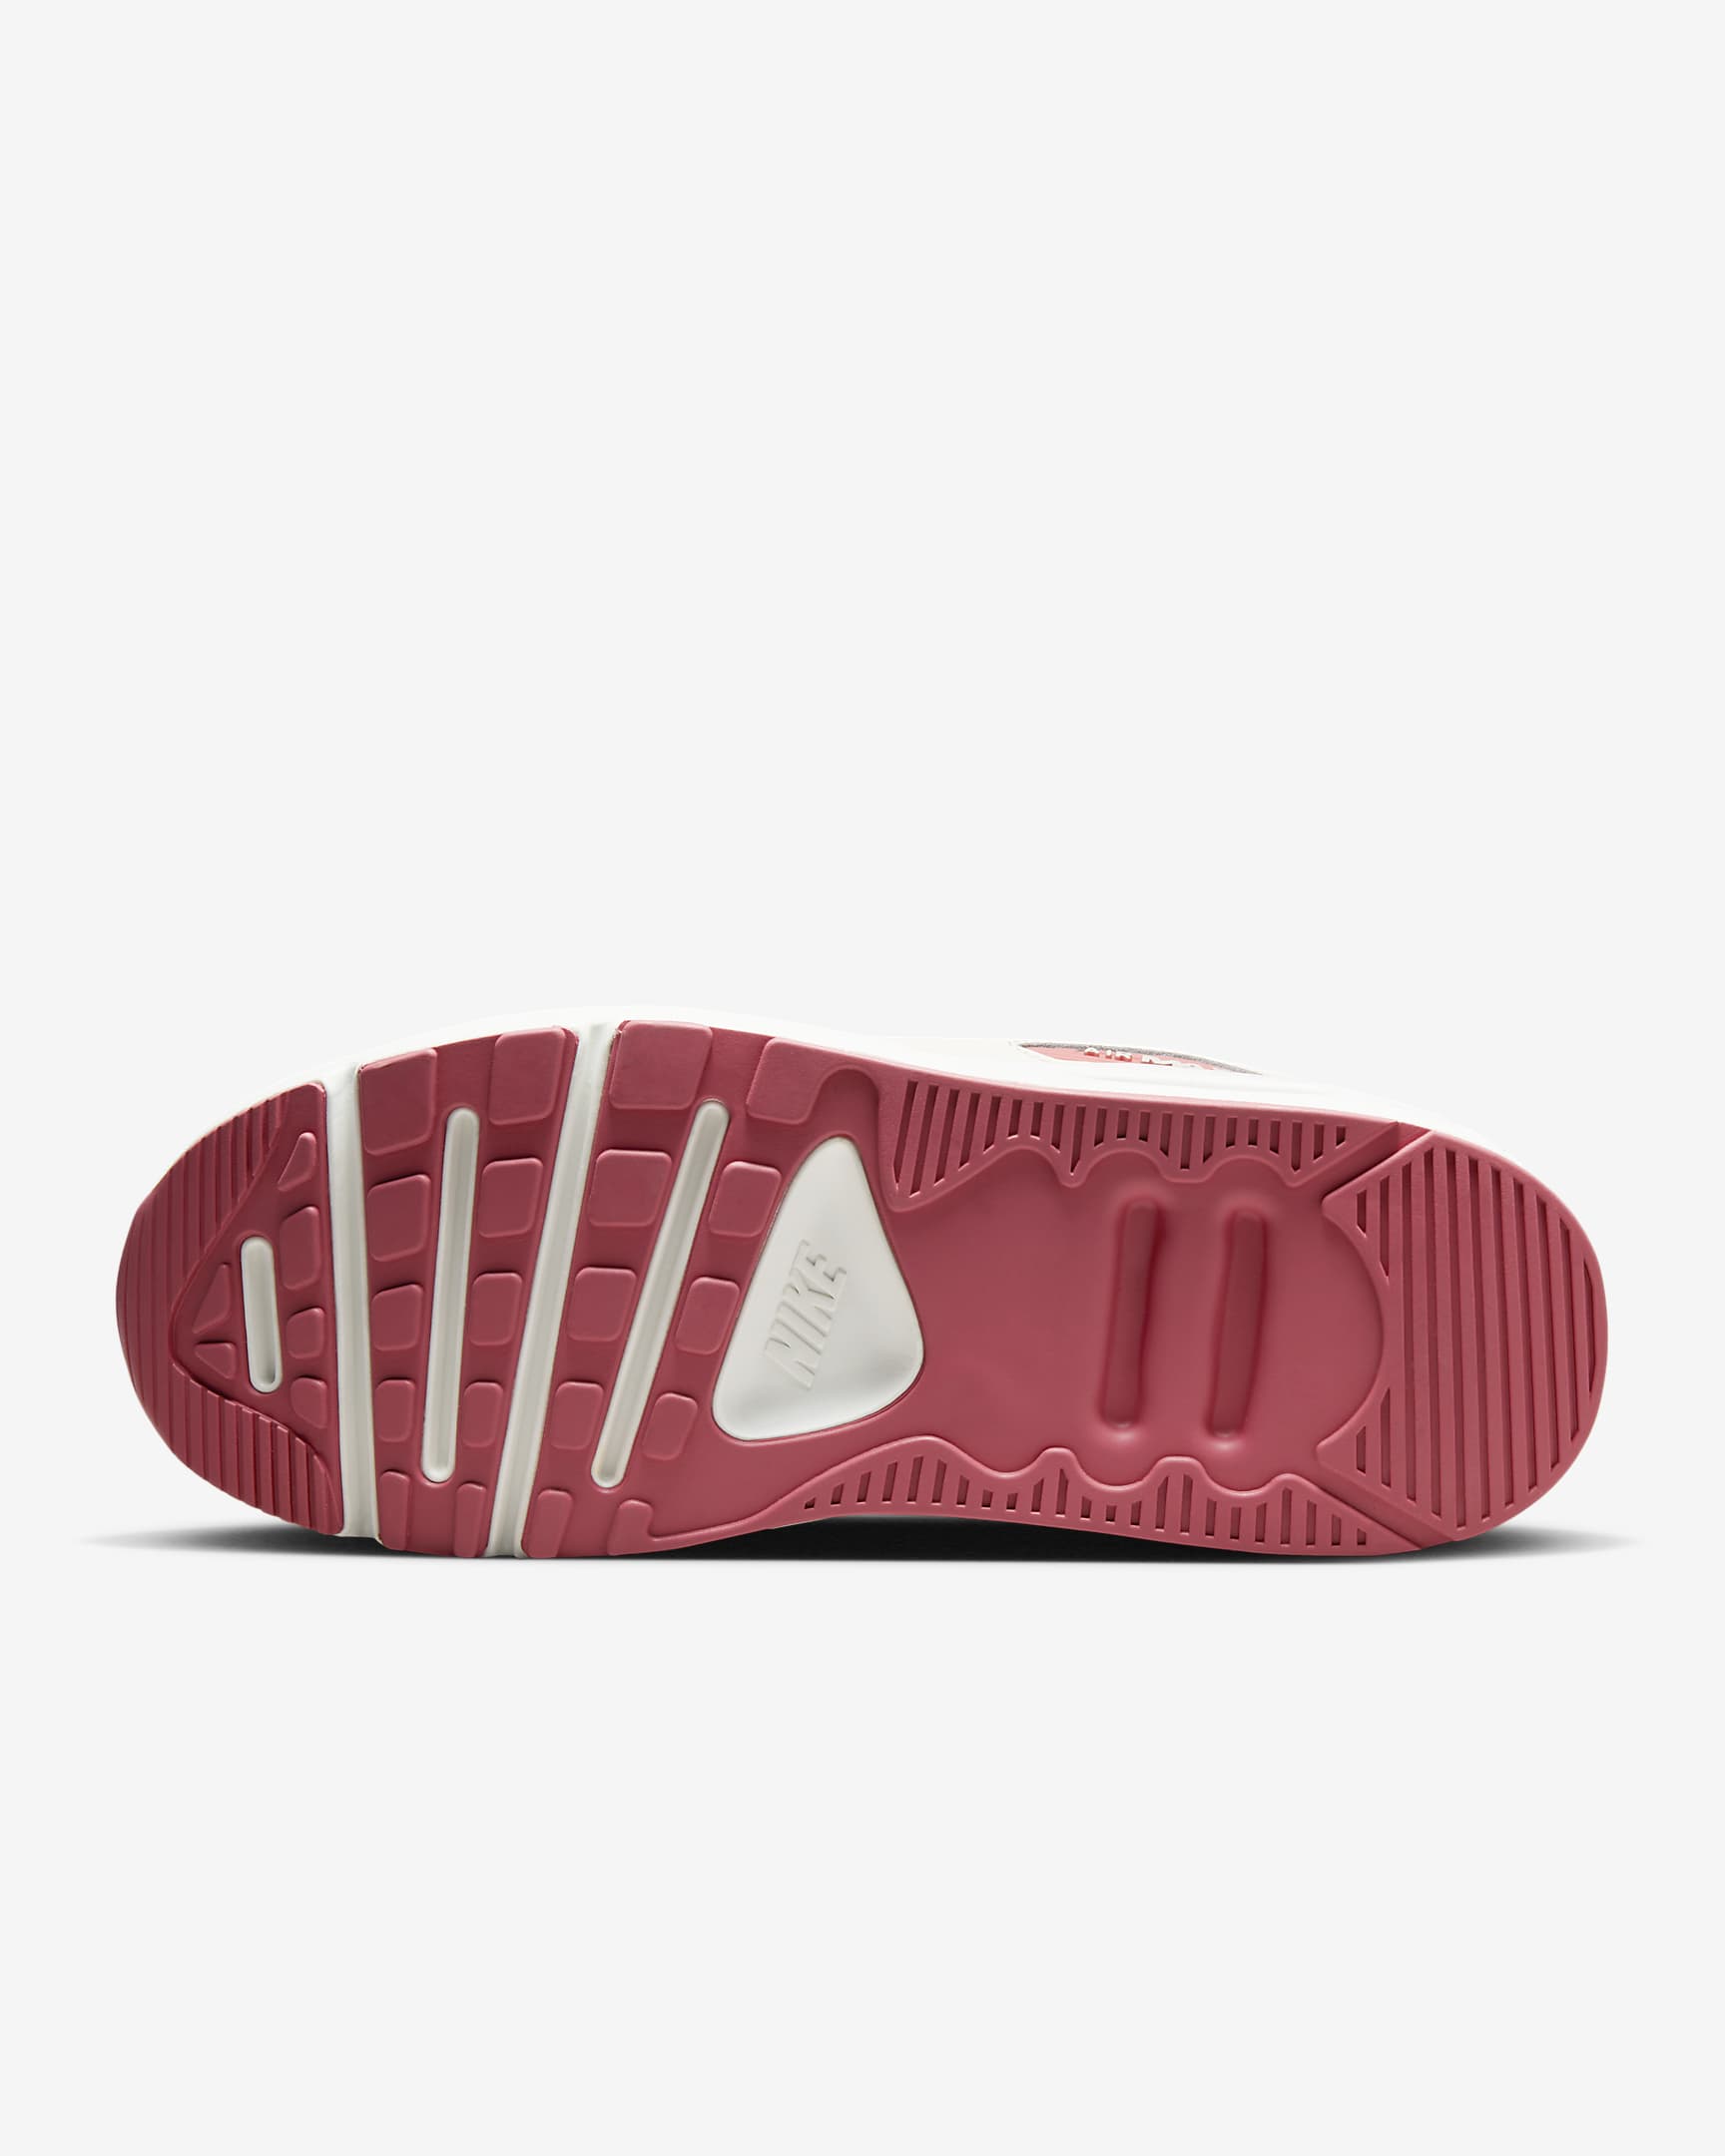 Nike Air Max 90 LV8 SE 女鞋 - Sail/Adobe/Medium Soft Pink/Dark Team Red